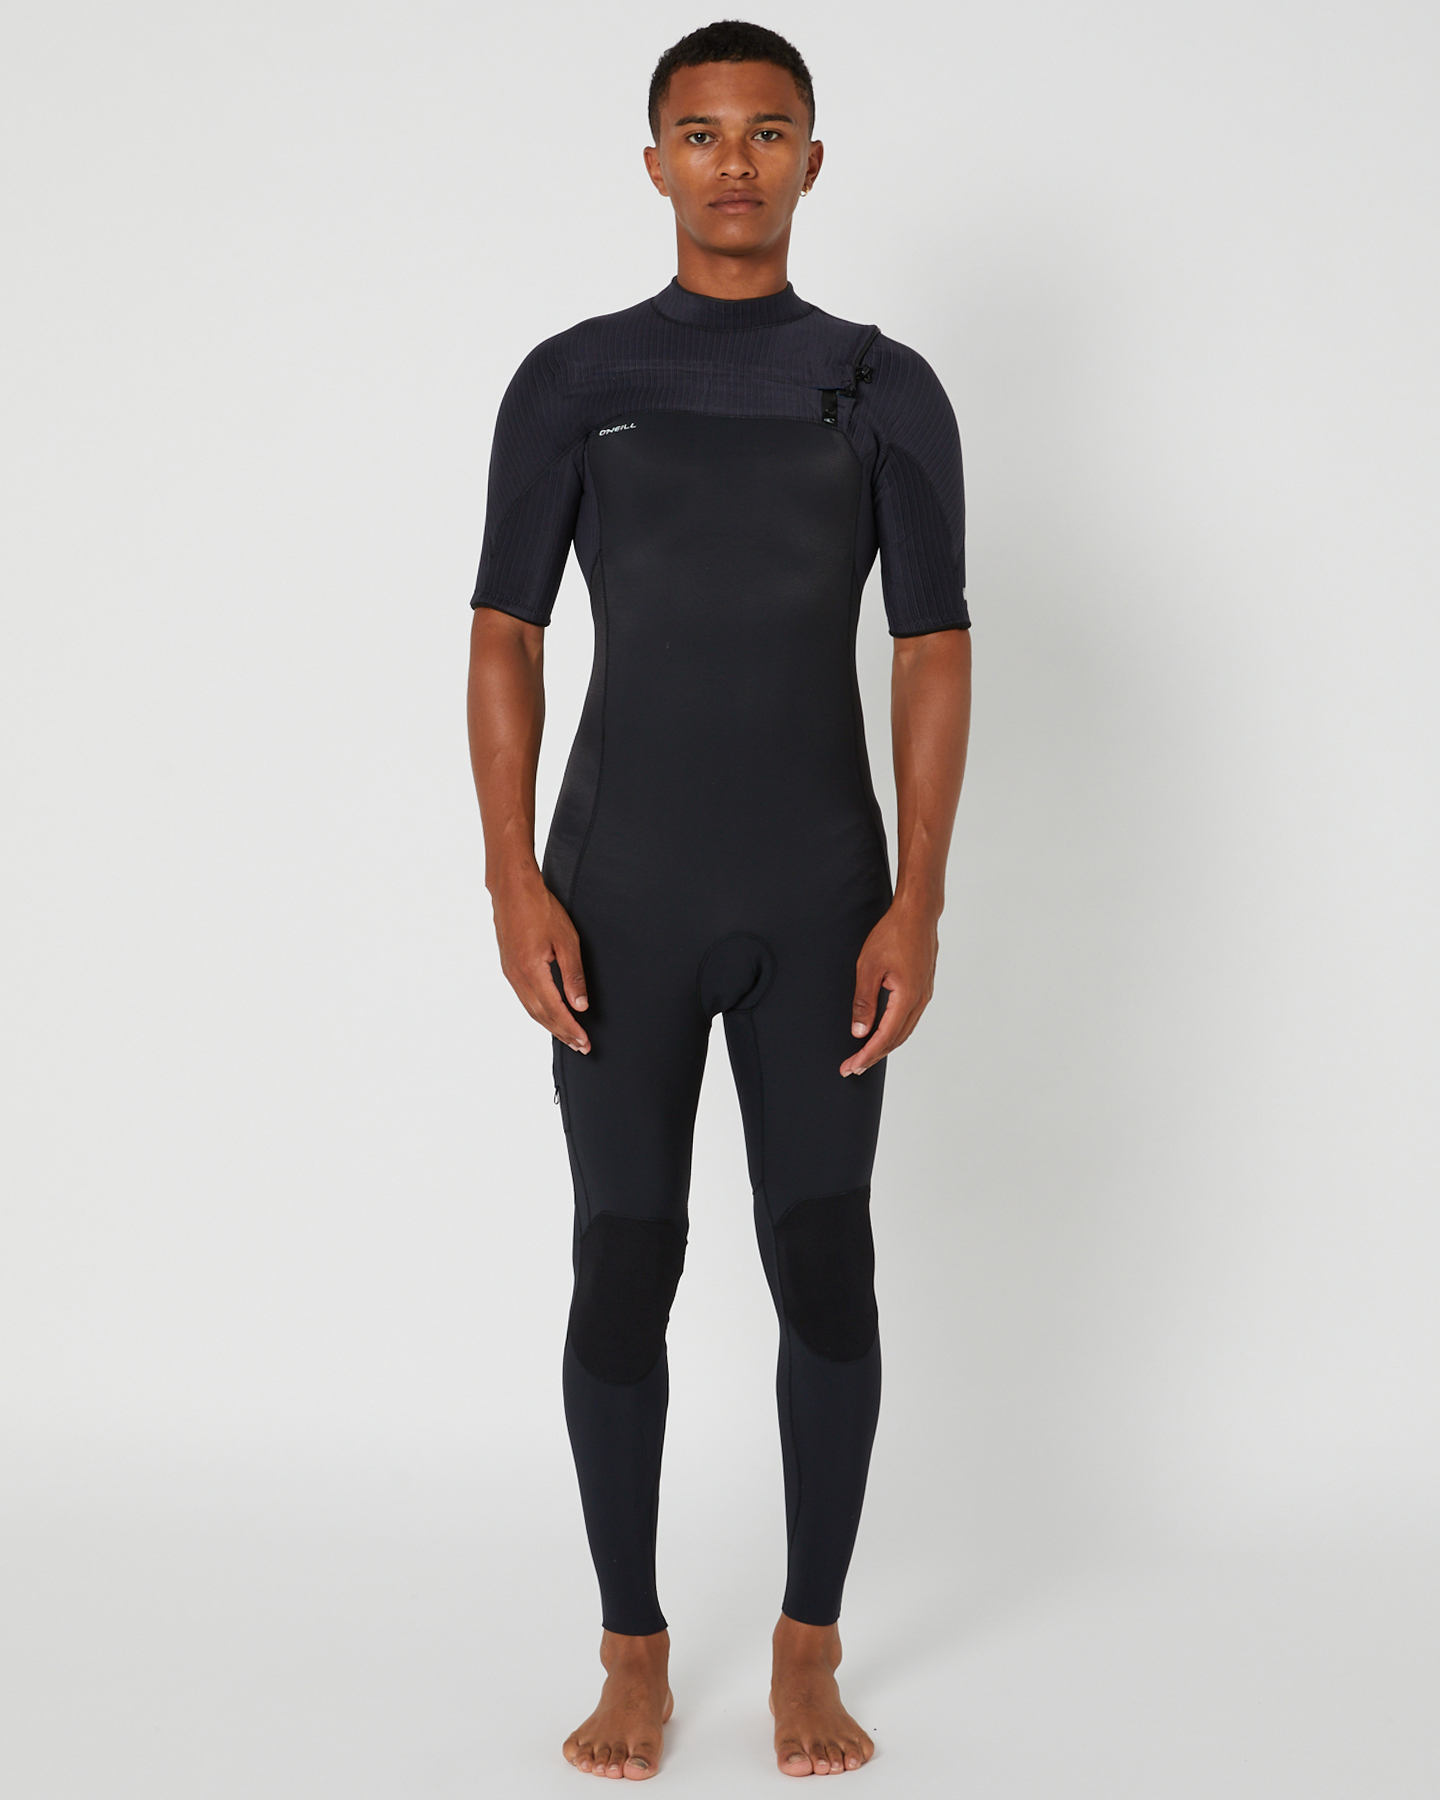 O'neill Hyperfreak Cz Ss Full 2Mm Wetsuit - Black | SurfStitch